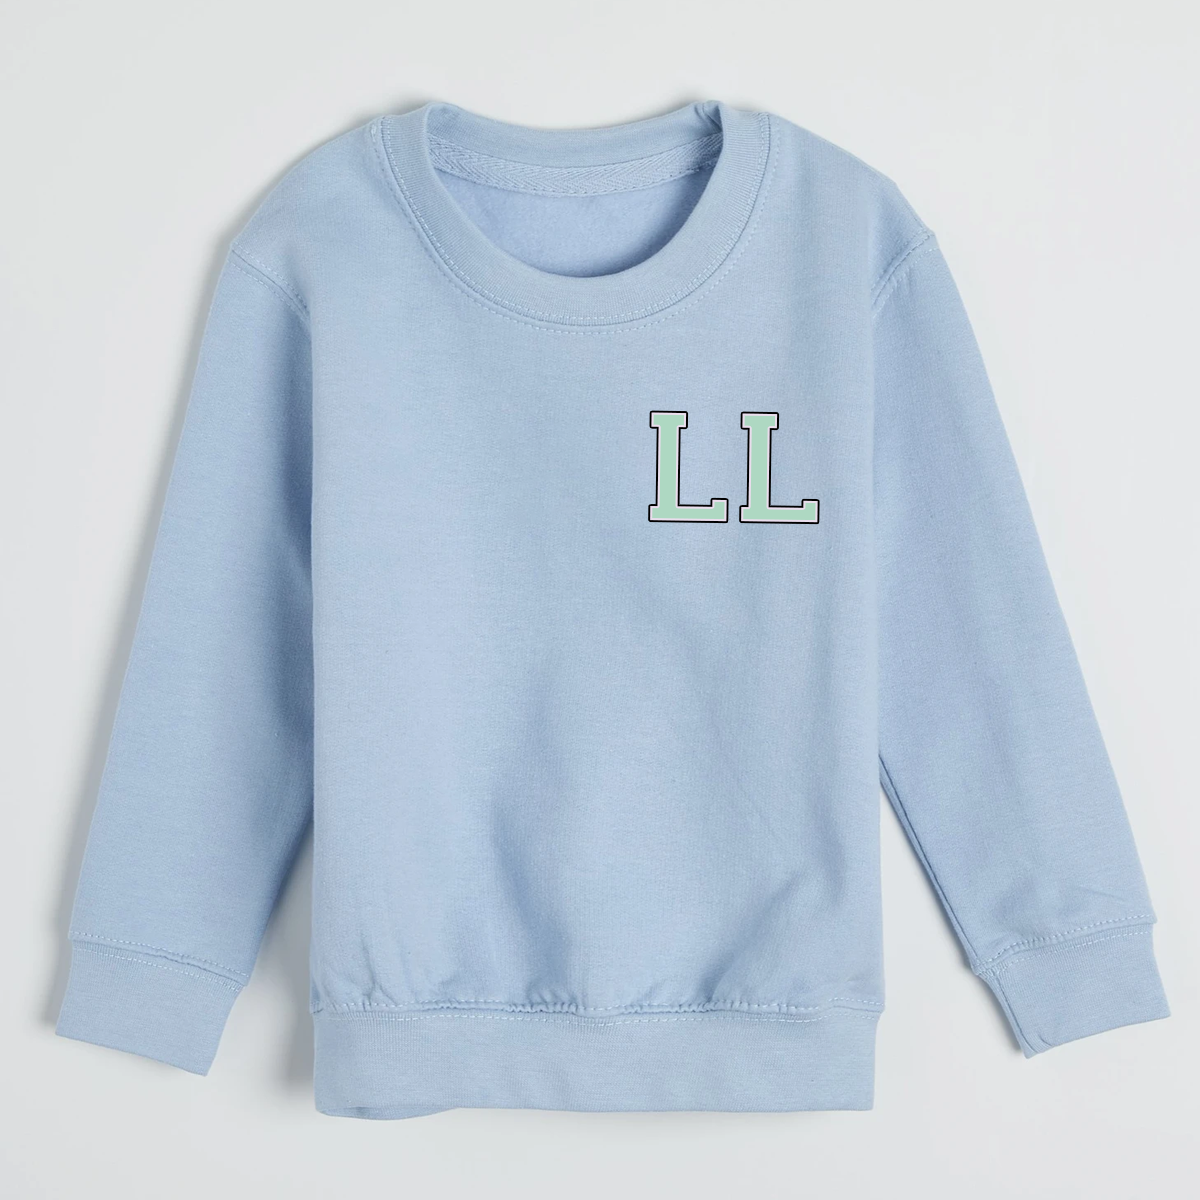 MiniVIP© Personalised Varisty Letters Baby Blue Sweatshirt